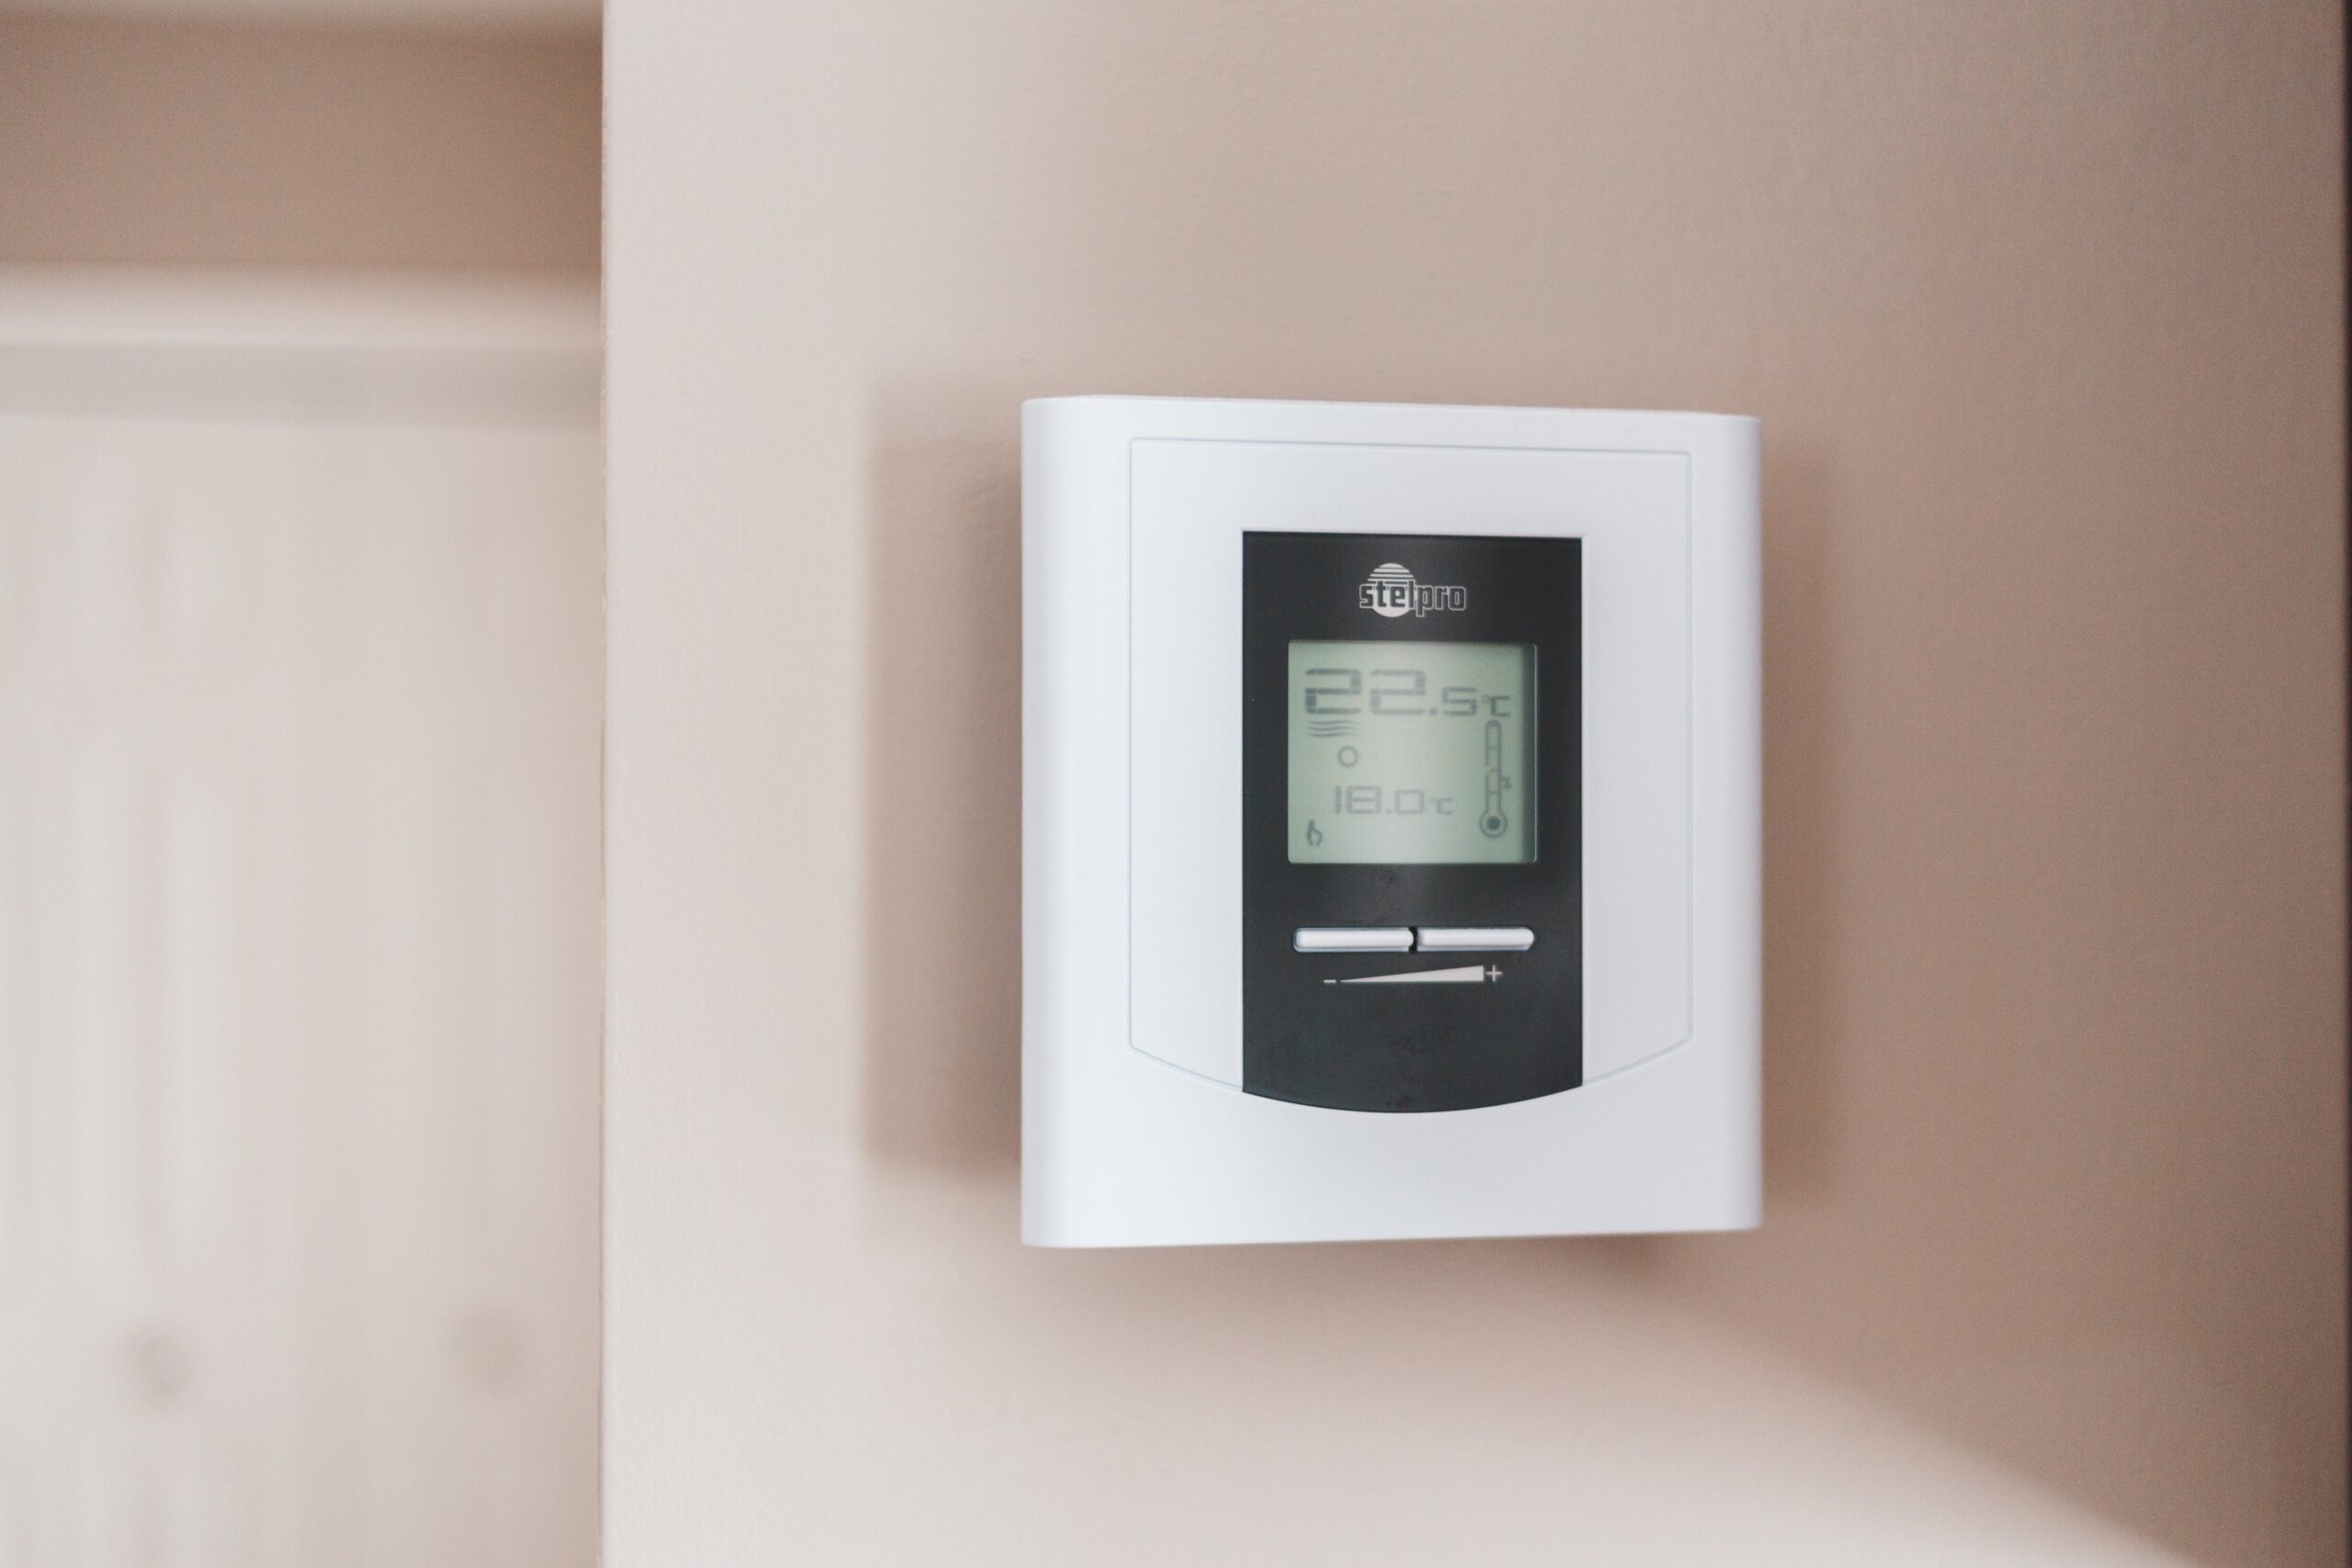 Thermostat an der Wand in einem Smarthome